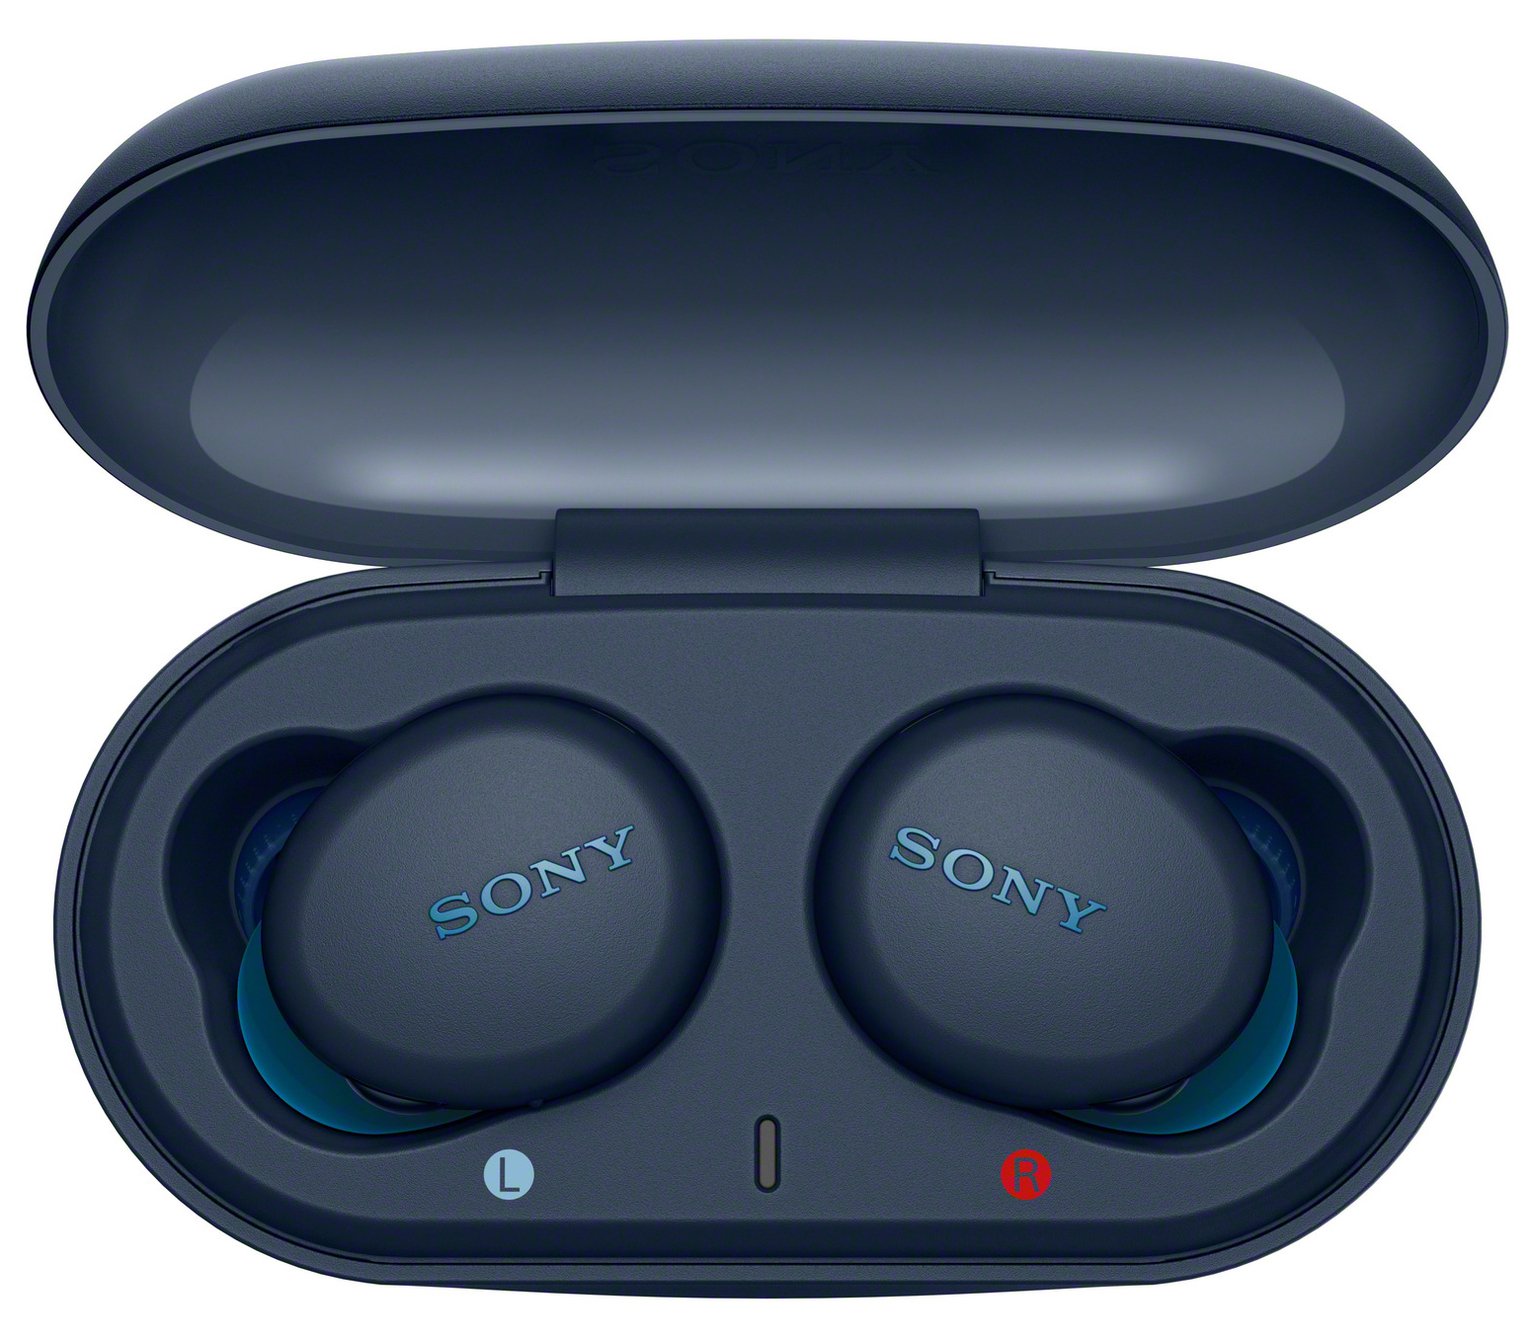 Sony WF-XB700 In-Ear True Wireless Earbuds Review